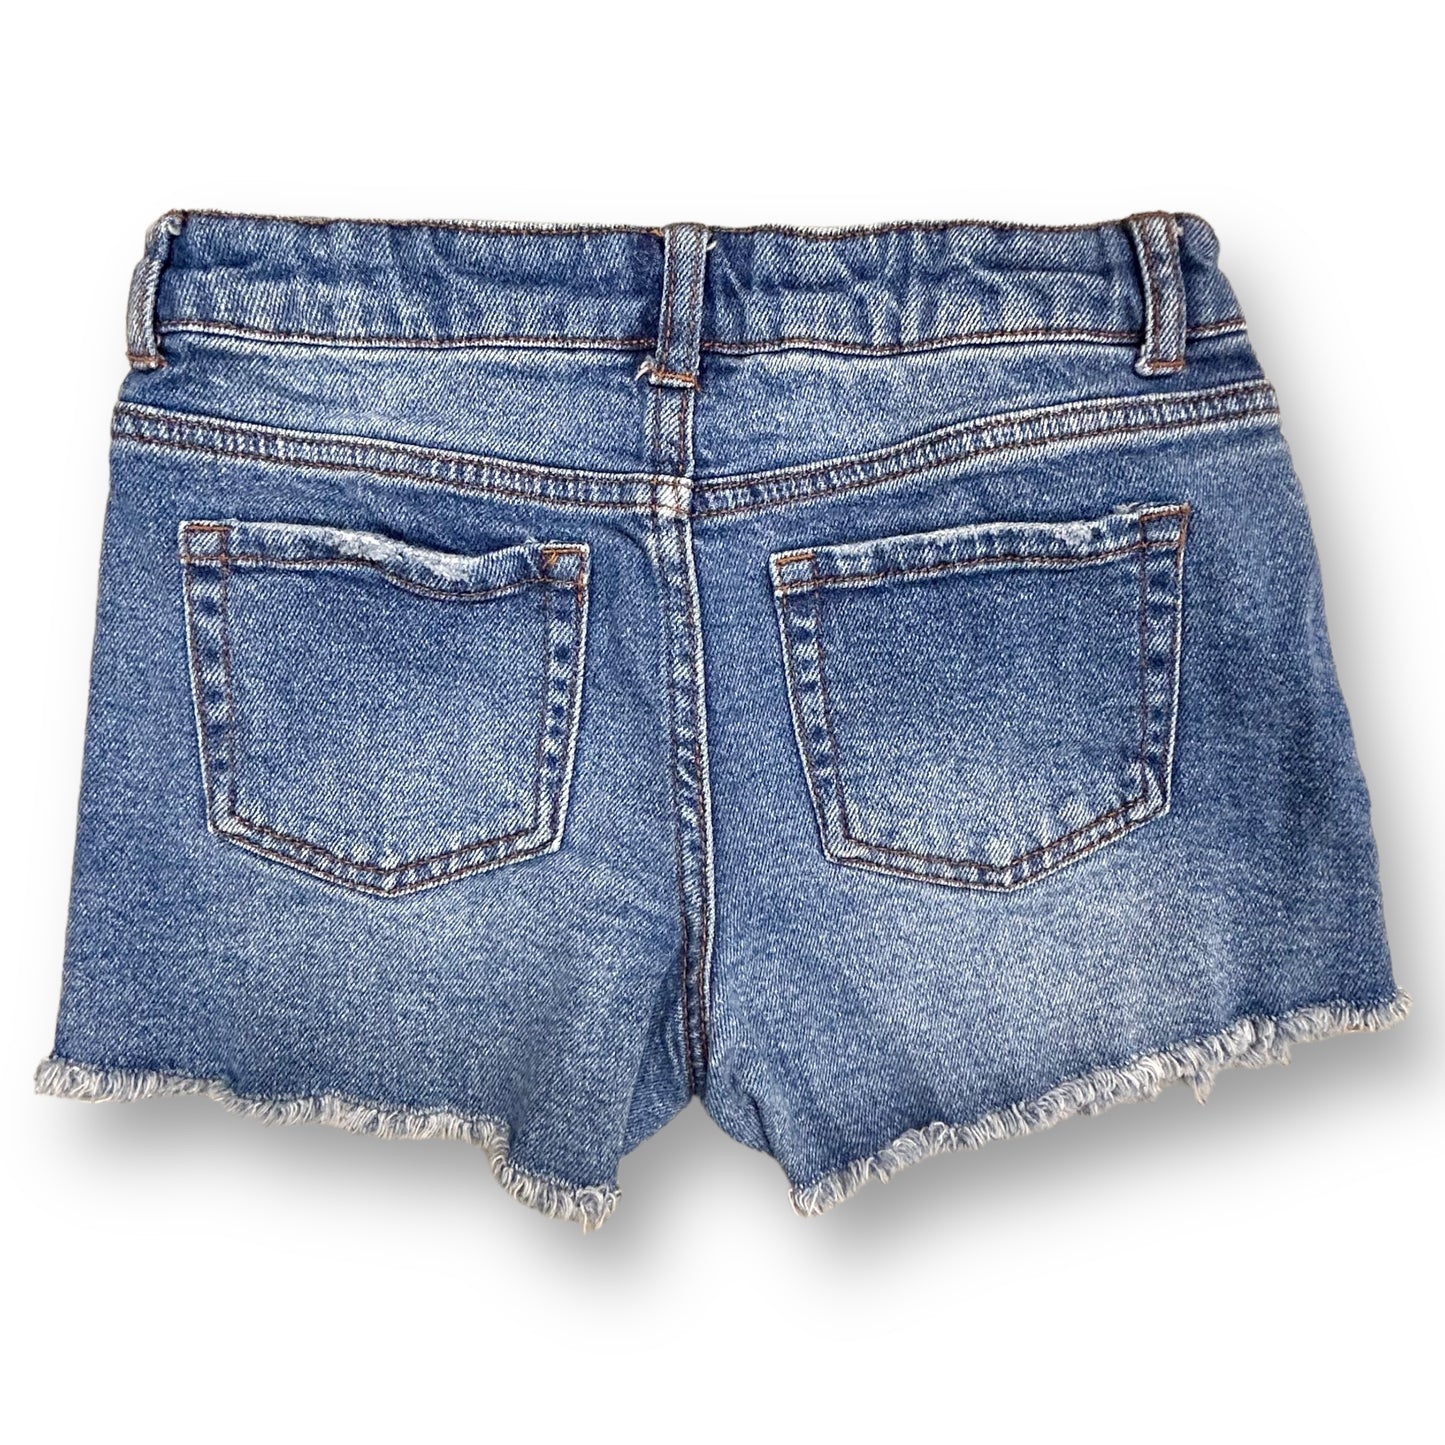 Girls Art Class Size 10/12 L Denim Adjustable Waist Shorts